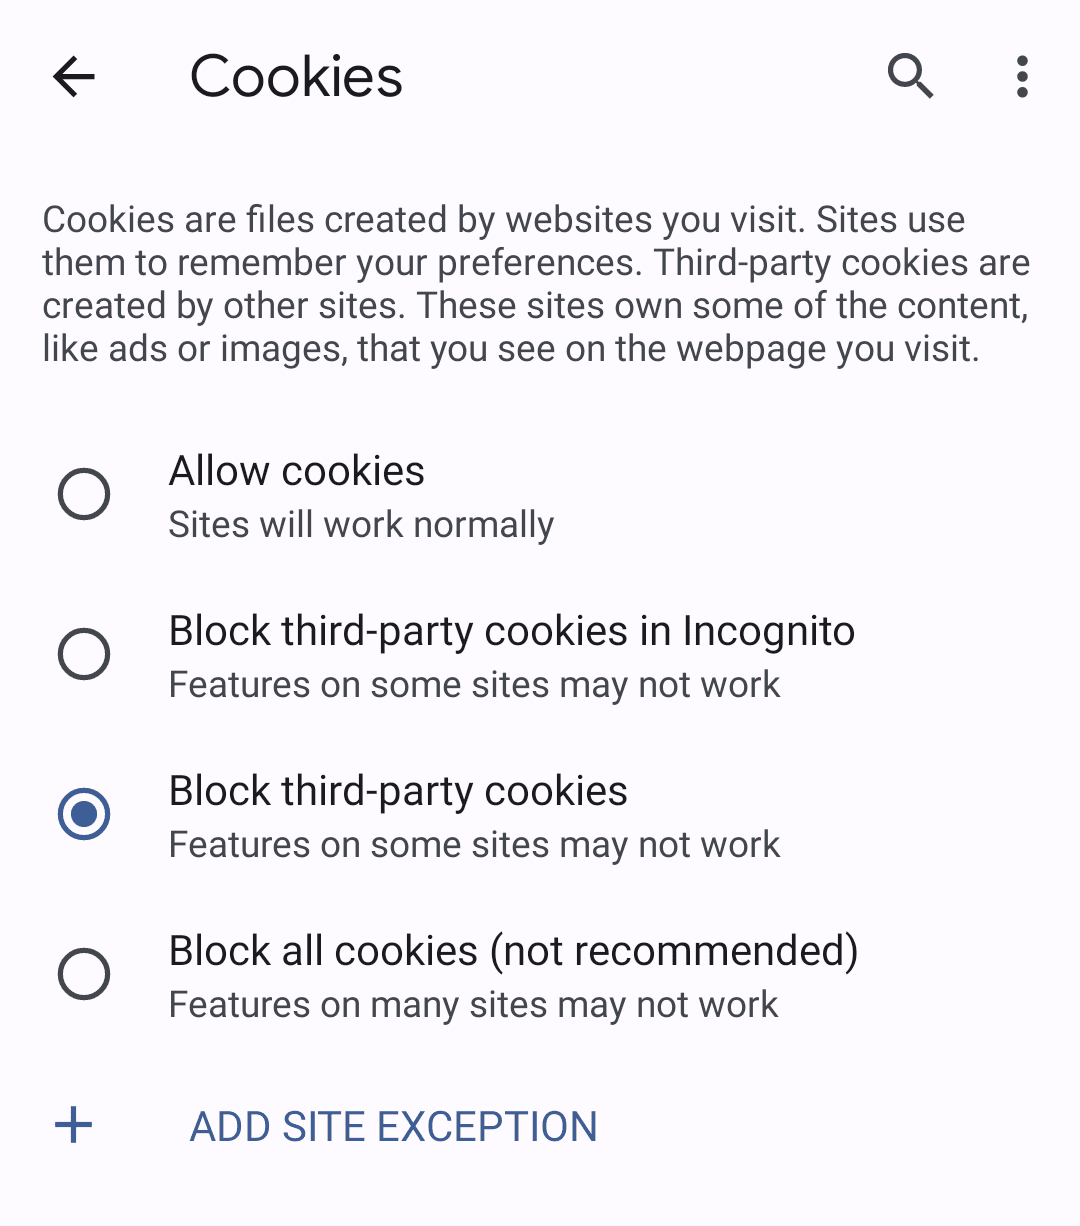 Simule a desativação gradual de cookies de terceiros configurando o Chrome para bloqueá-los.